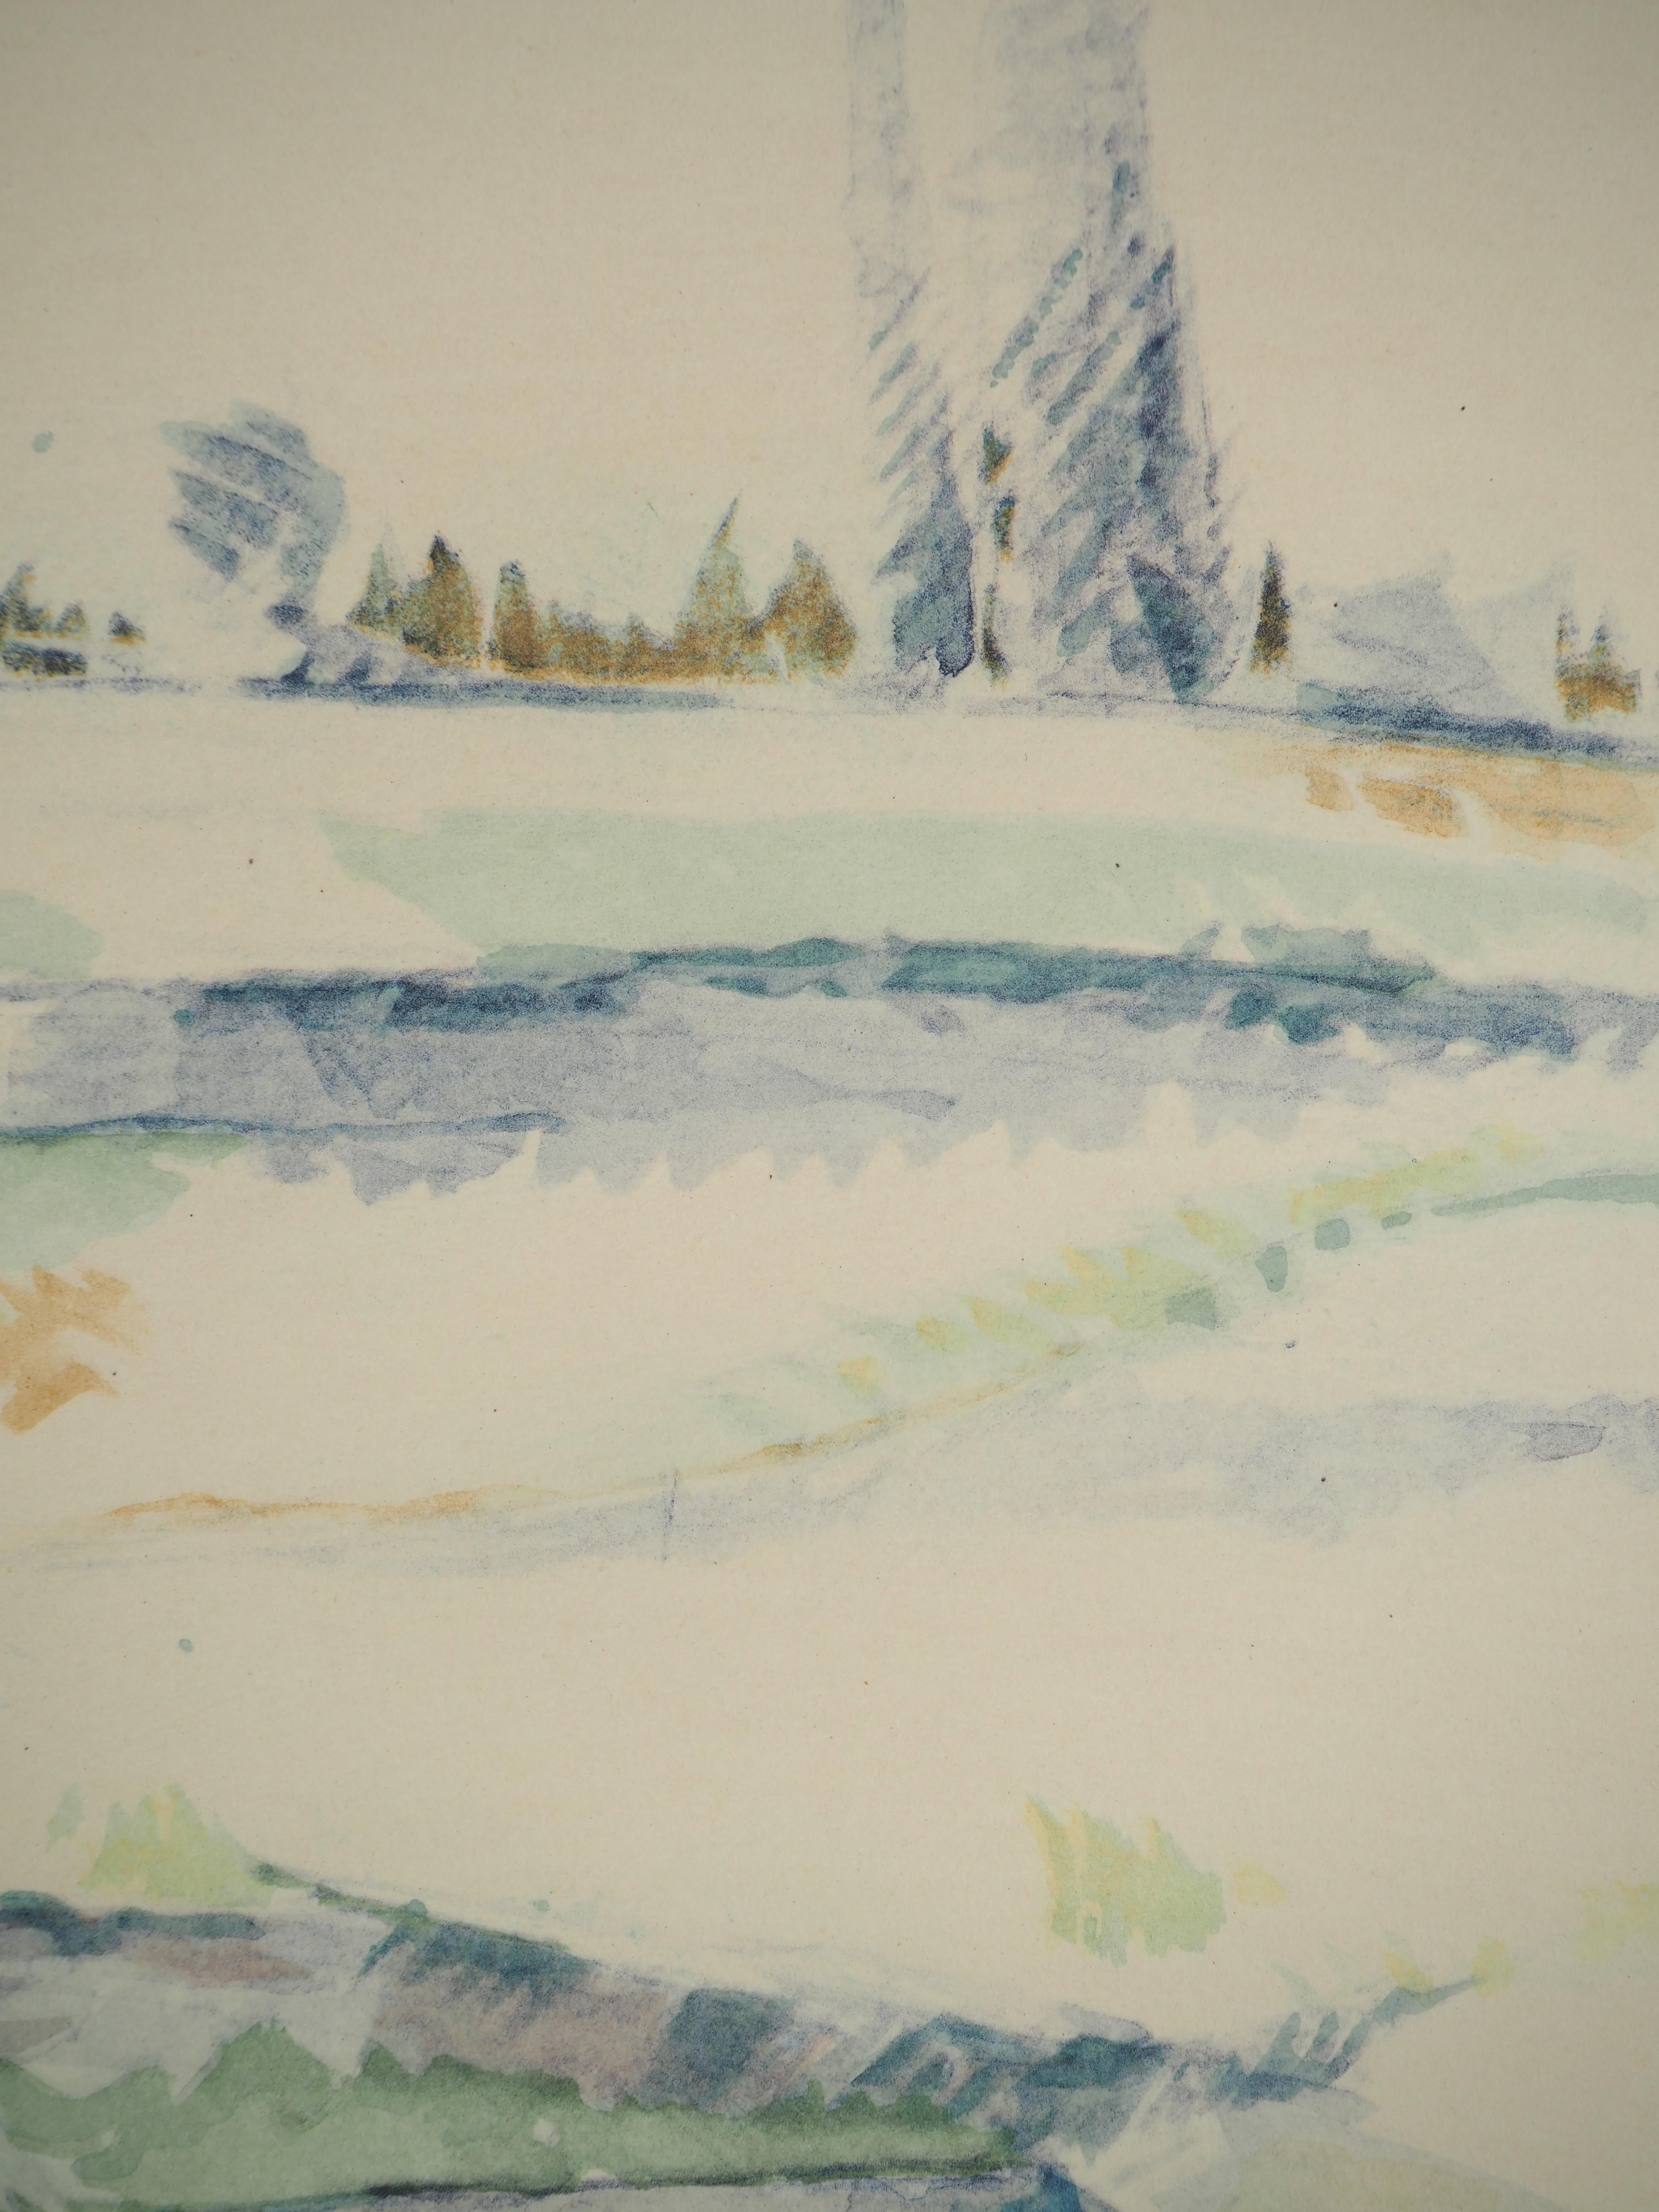 Paul Cezanne
Arbres et maisons, 1971

Lithographie et pochoir (atelier Jacomet)
Non signé
Numéroté / 225
Sur papier appliqué sur vélin d'Arches 53.5 x 41.5 cm (c. 21 x 16.5 in)

INFORMATION : Cette lithographie fait partie du portfolio 